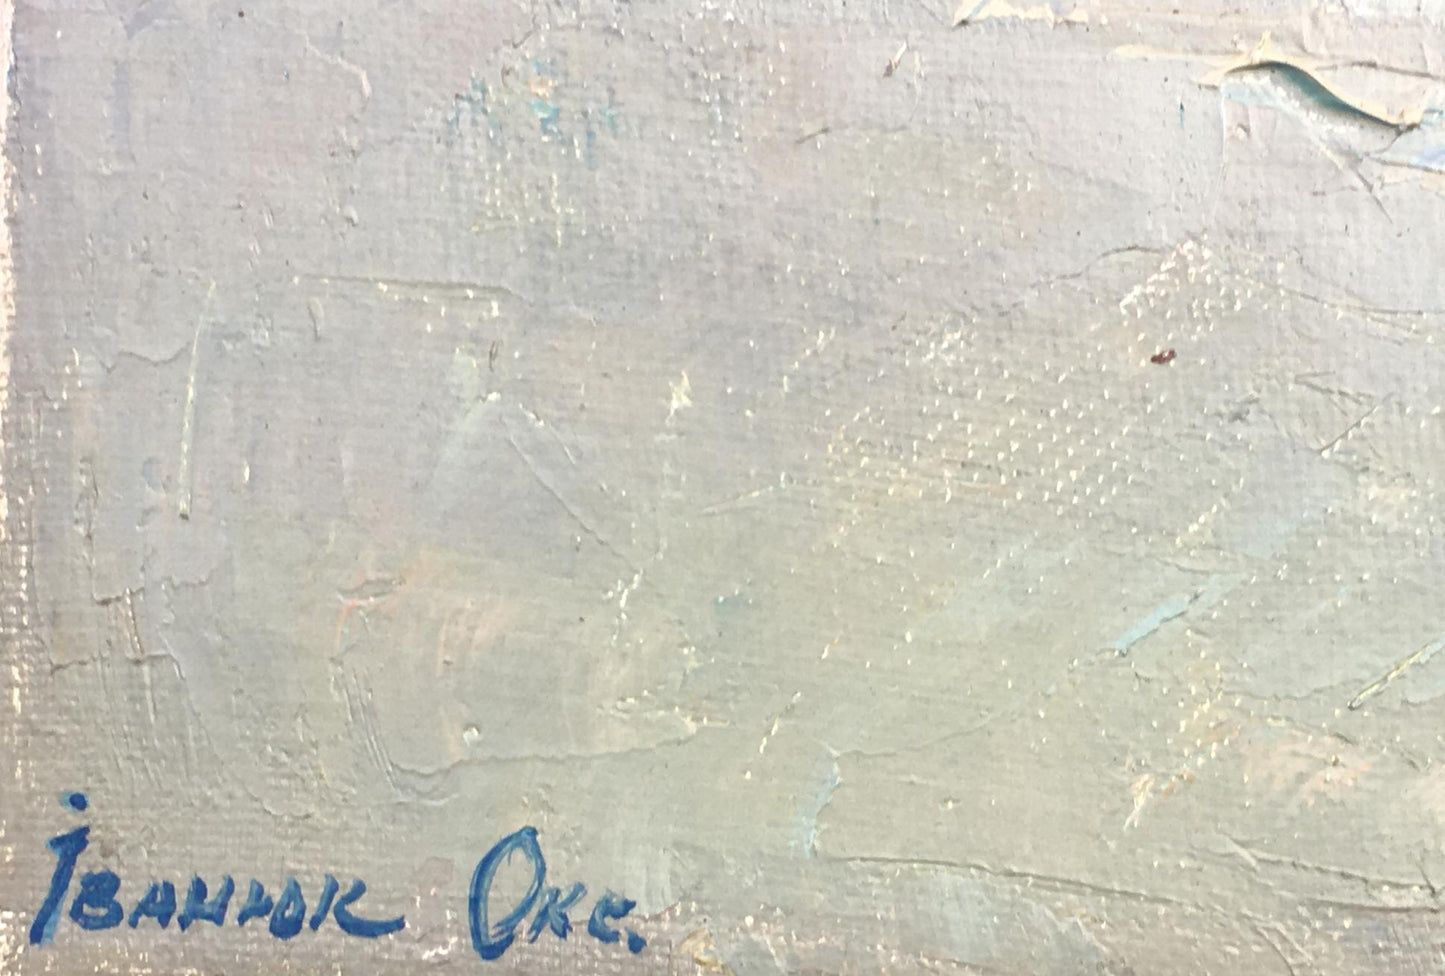 Artist's signature 